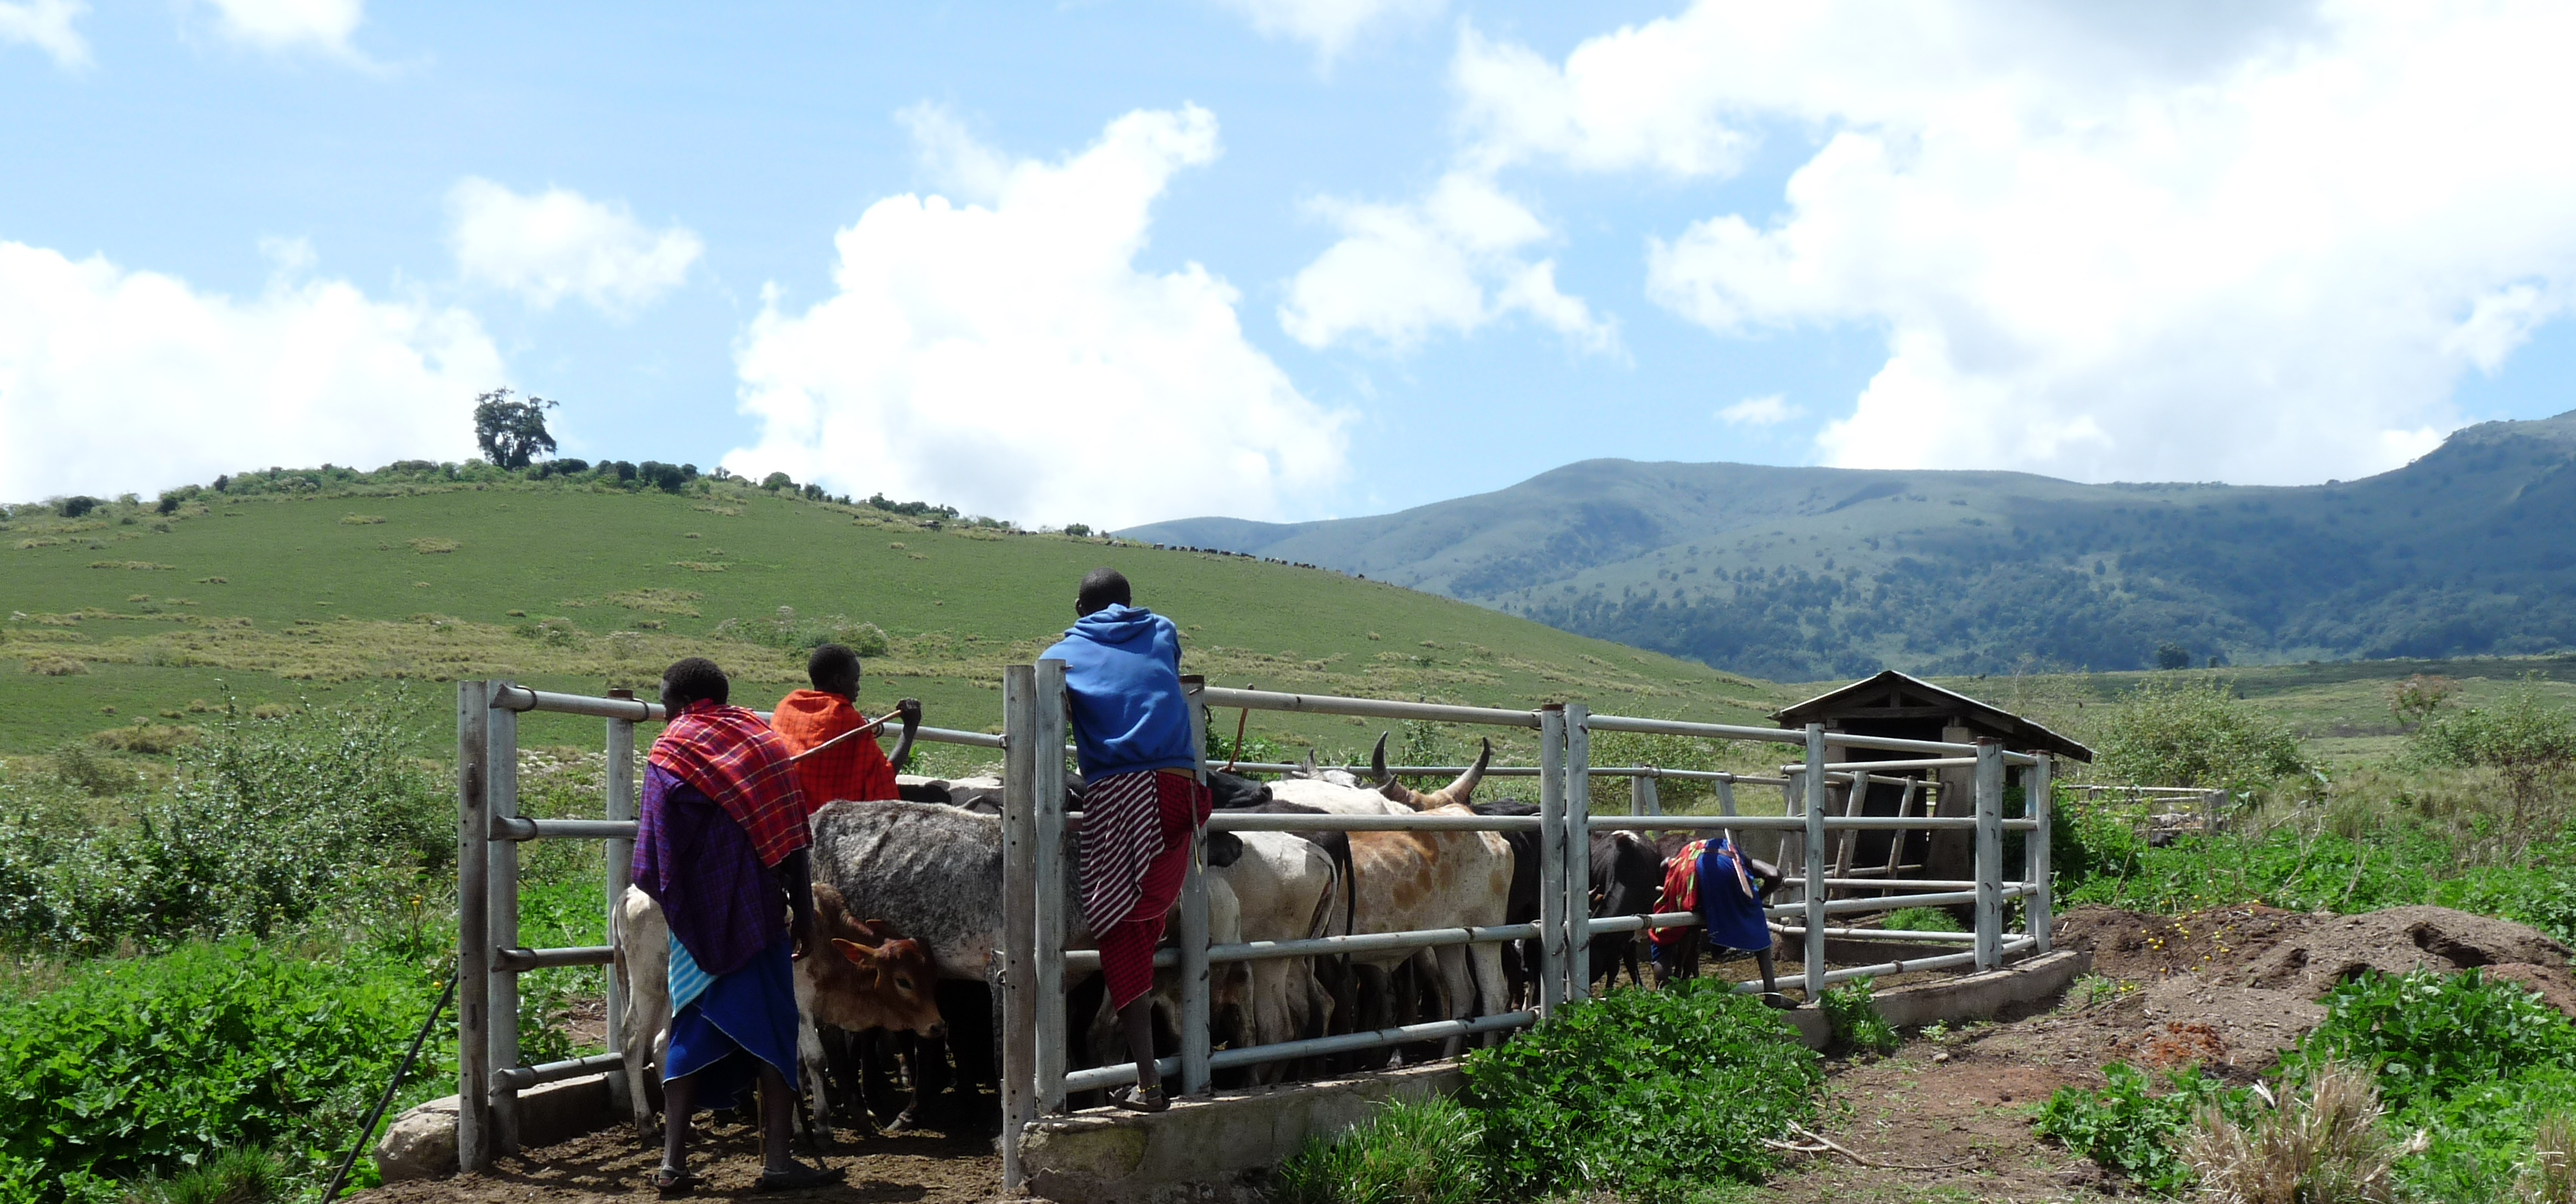 Maasai-heimon karjaa puhdistetaan tuholaisista Tansaniassa. Kuvassa karjaa aitauksessa ja ihmisiä puhdistustöissä.